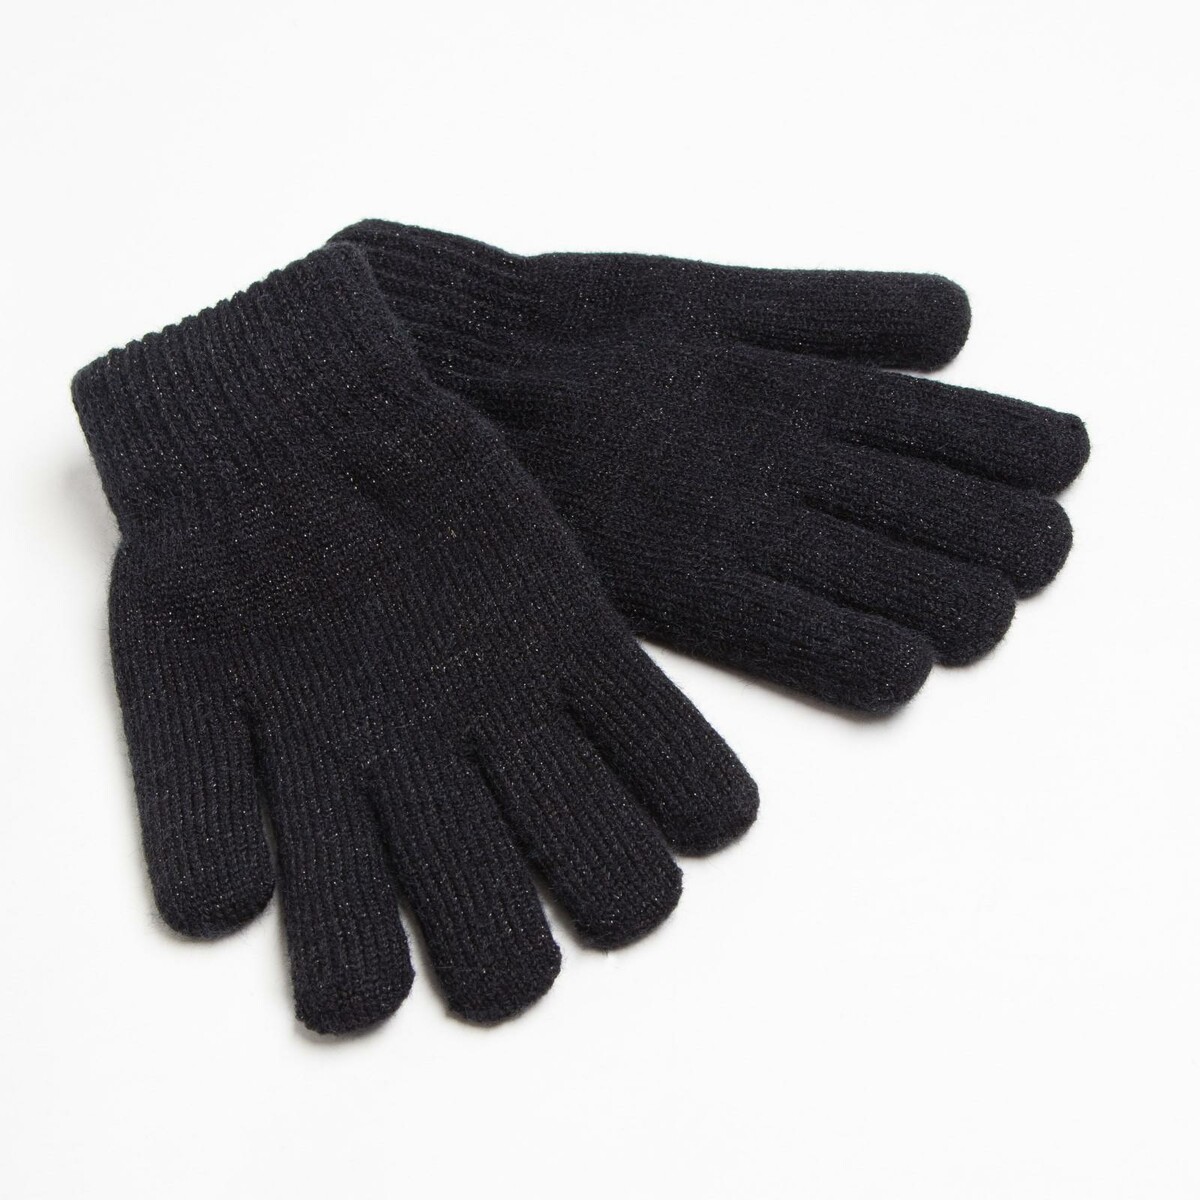 Перчатки женские двухслойные minaku однотонные, размер 6,5, цвет черный перчатки женские minaku цв р р 24 см